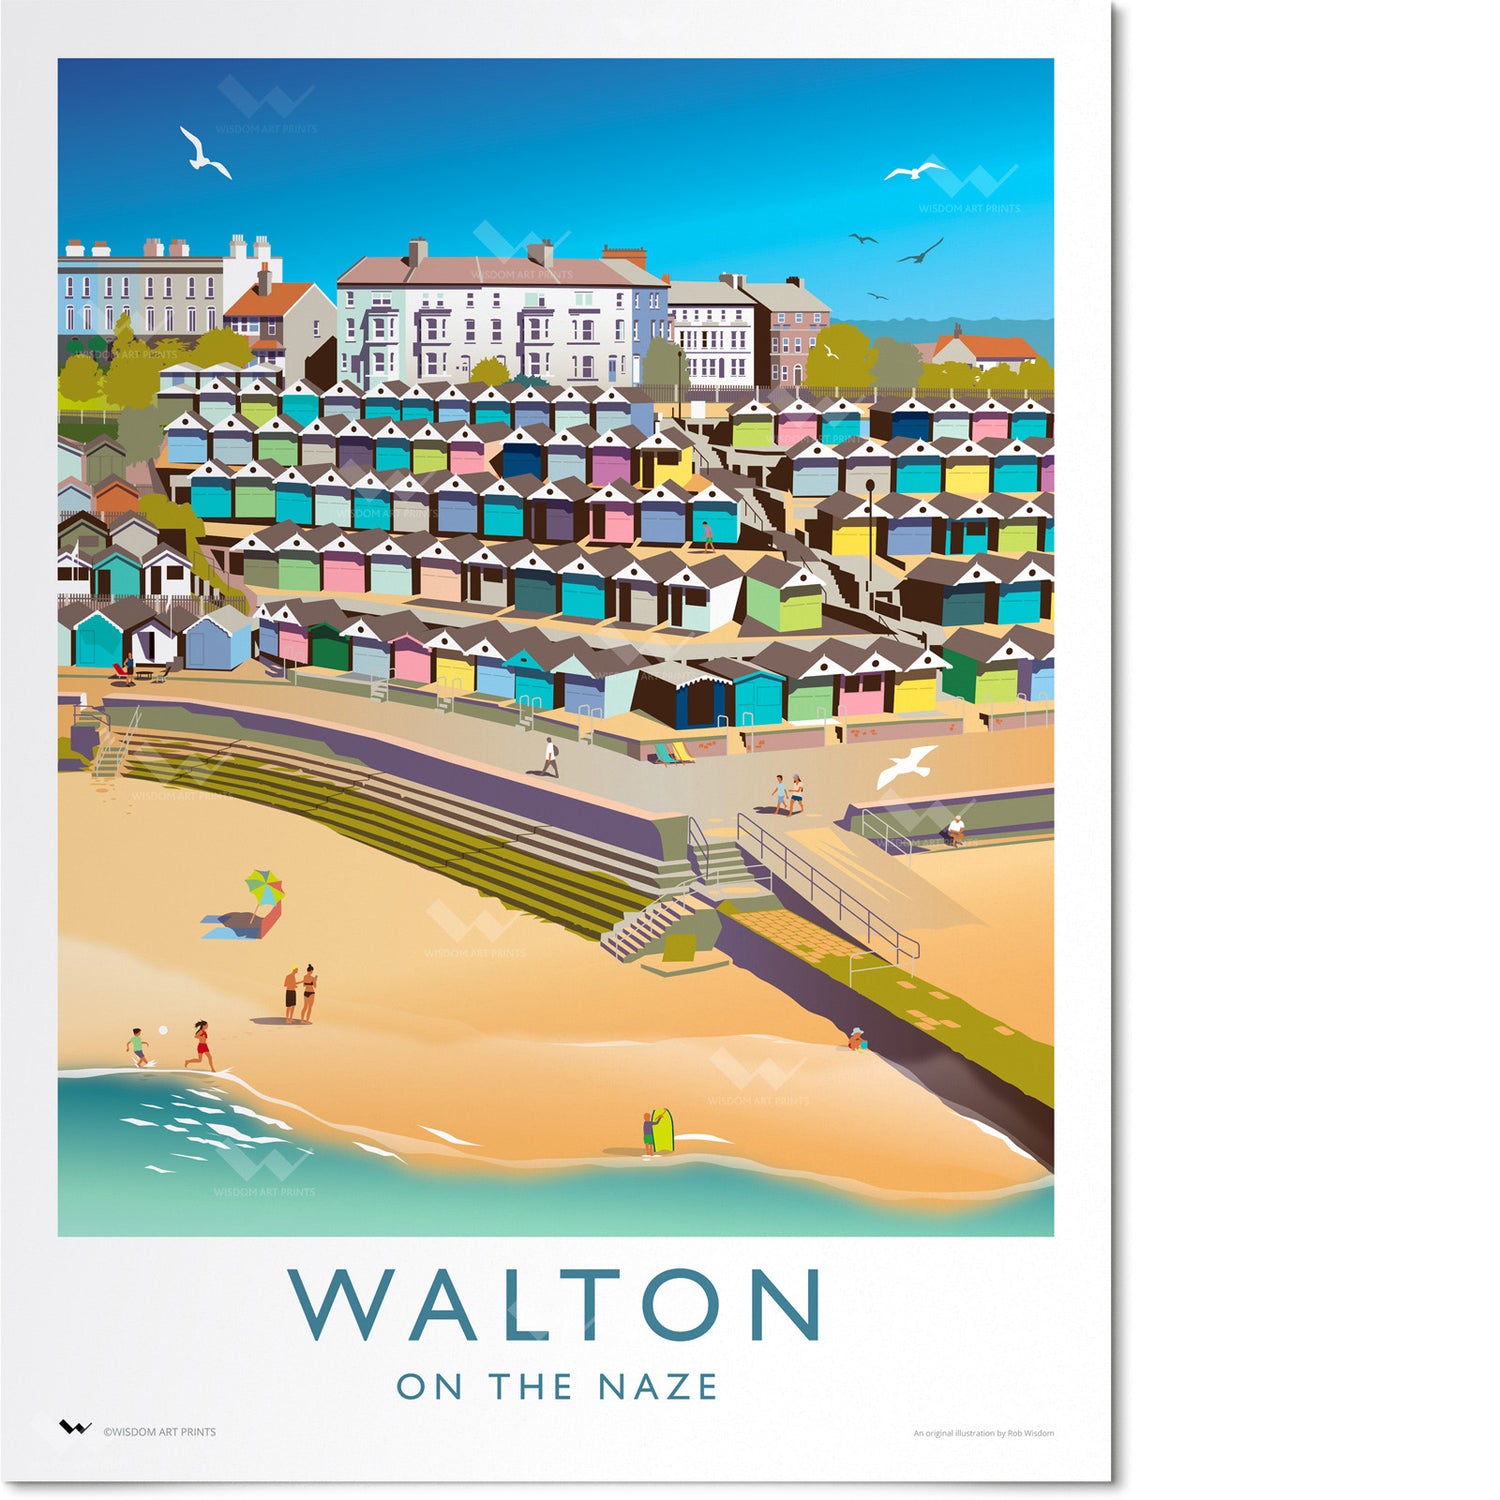 Walton-on-the-Naze travel poster